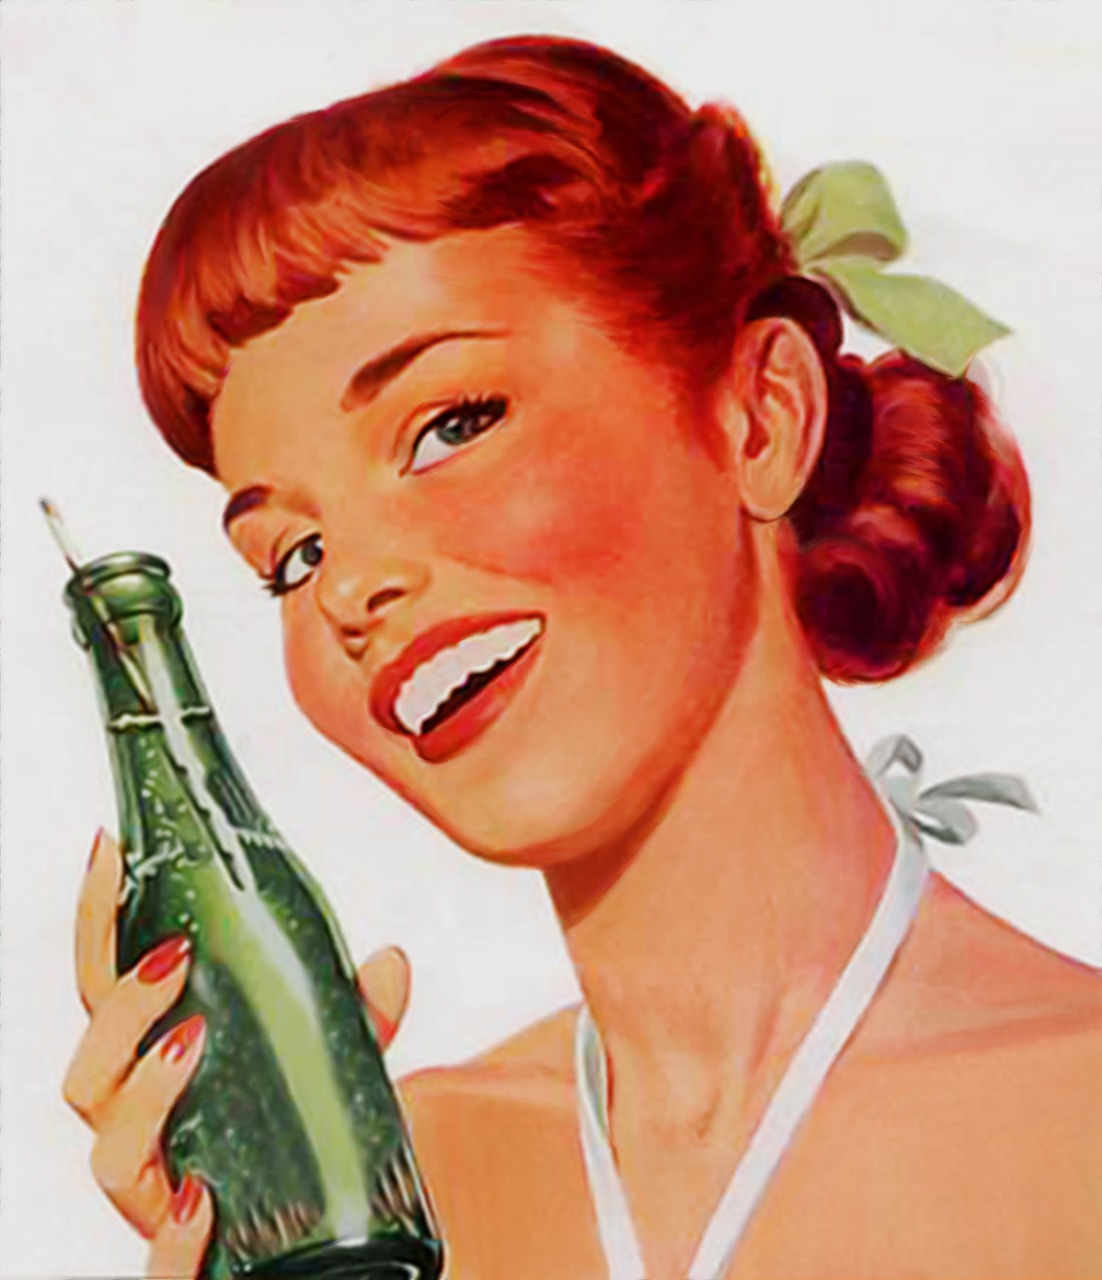 soda bottle old ads free photo